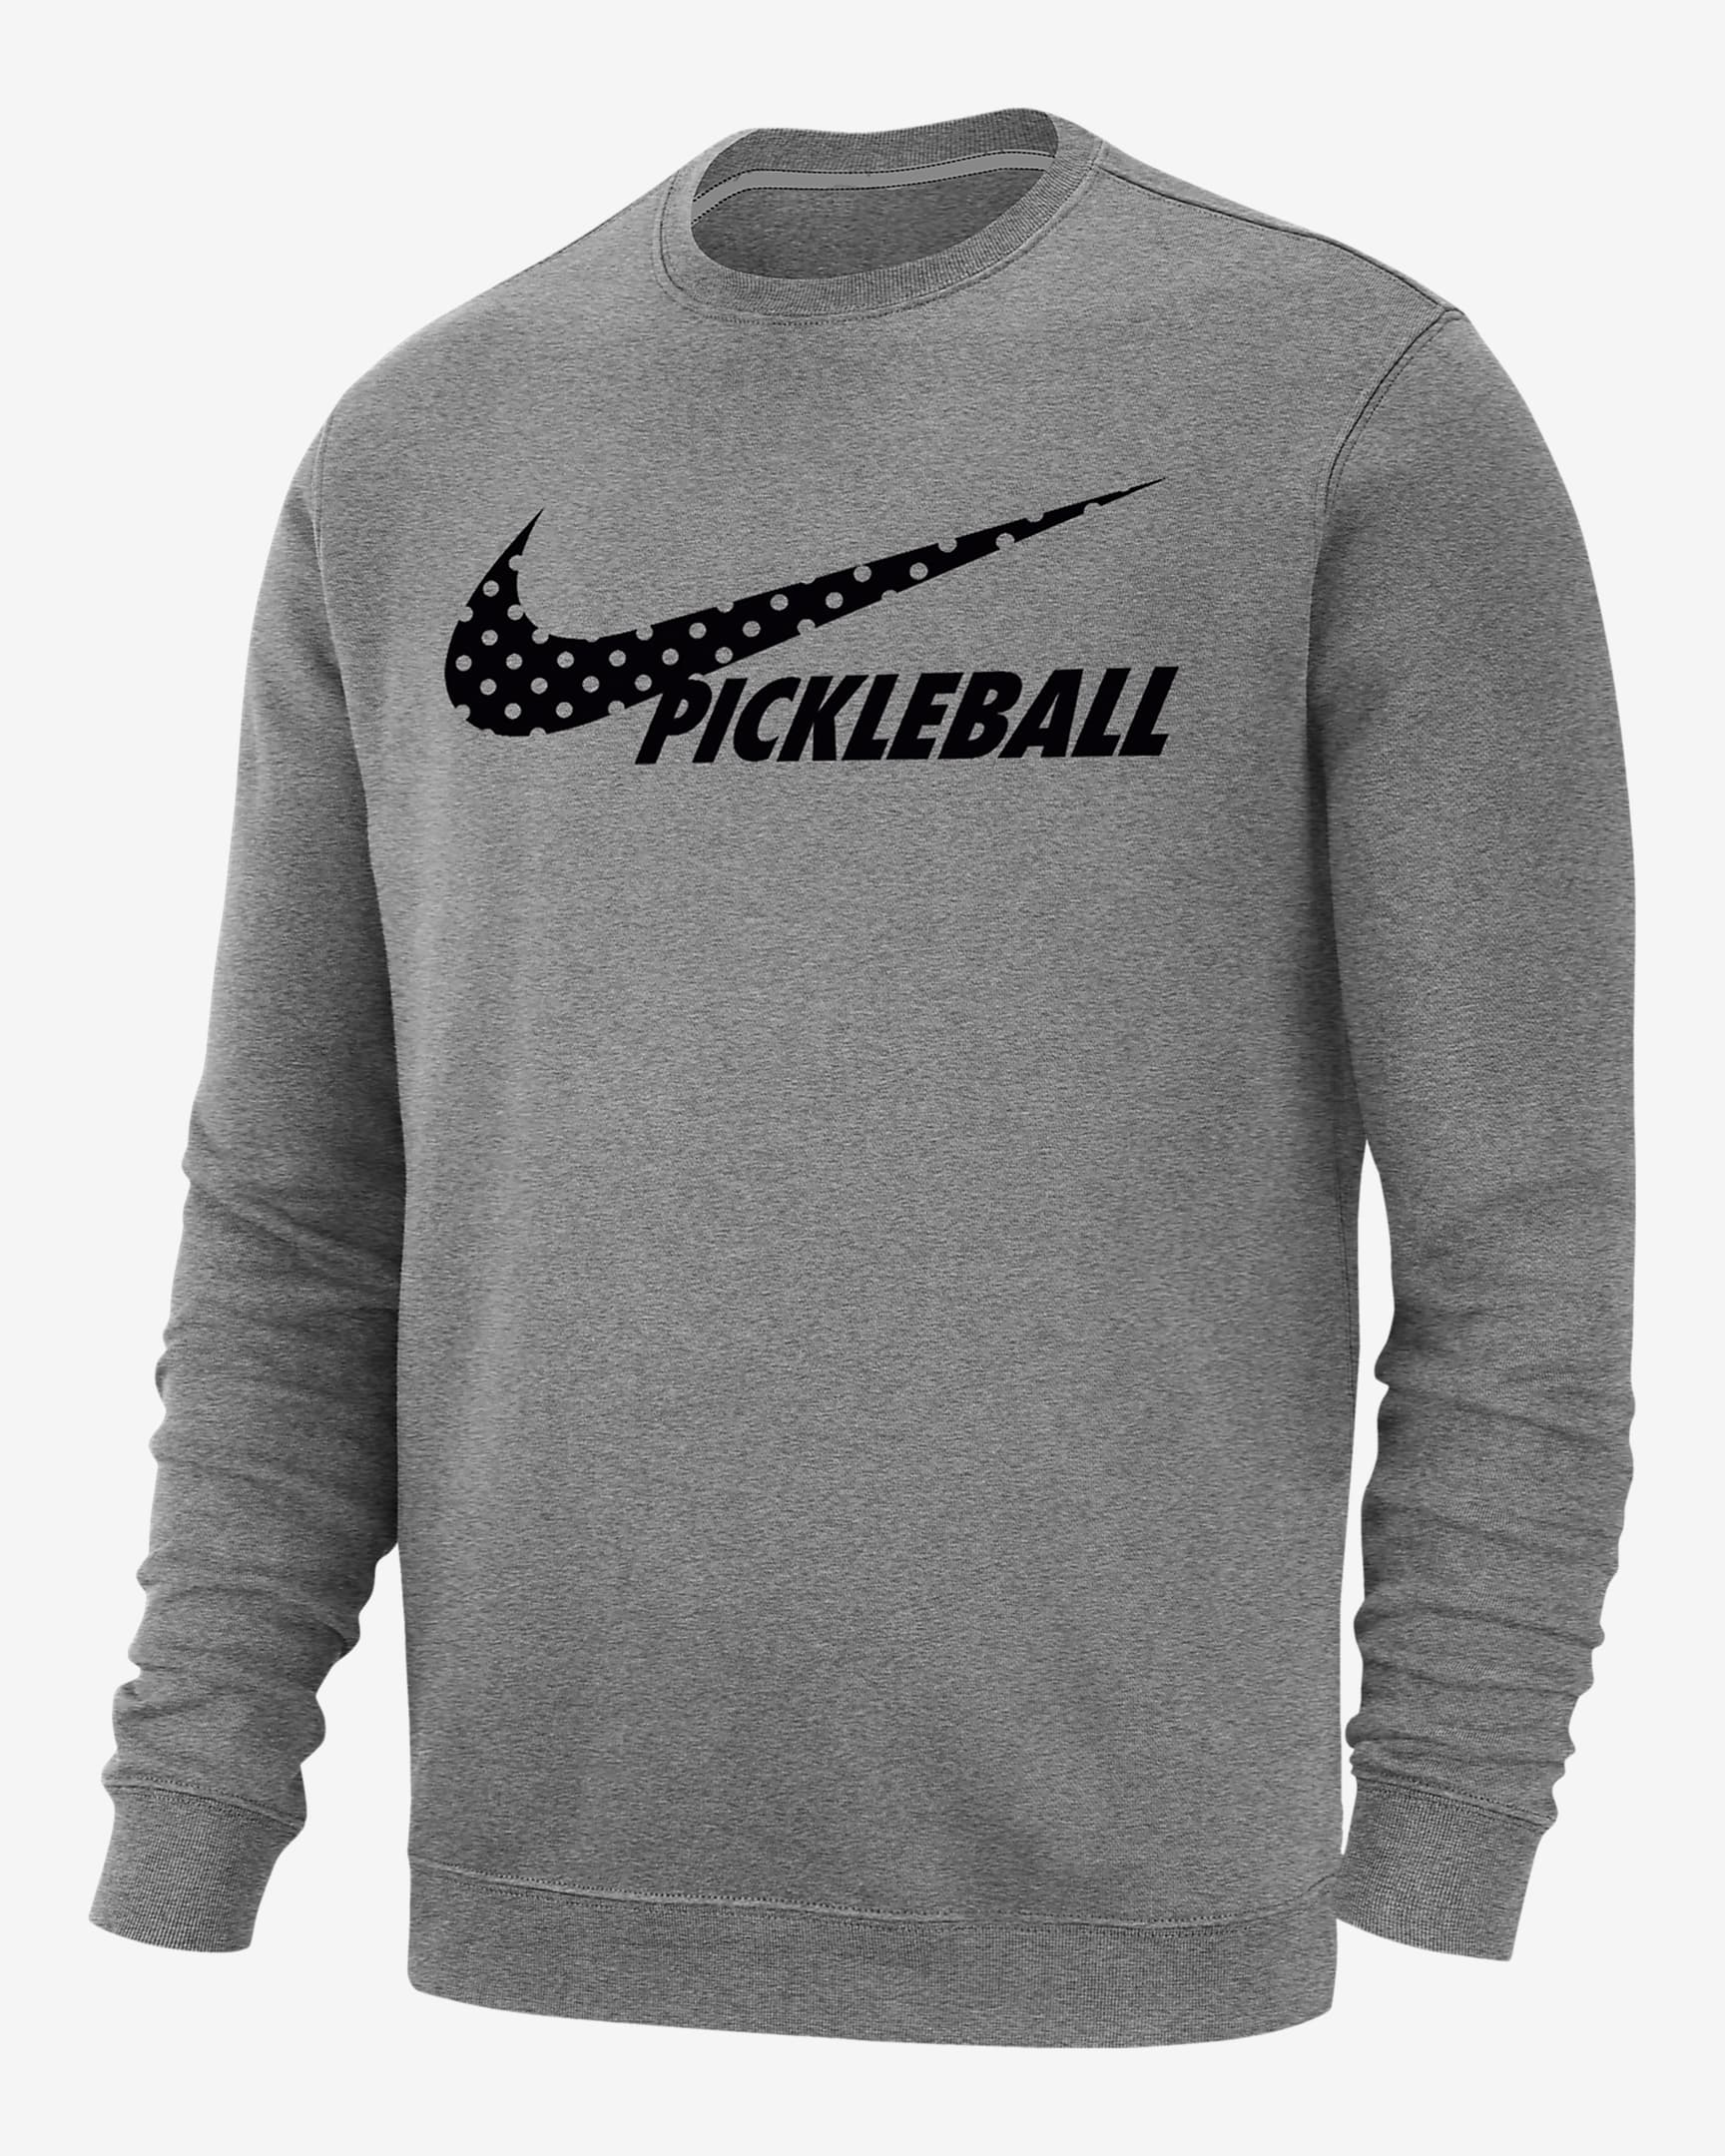 Nike Sportswear Club Fleece Men's Pickleball Sweatshirt. Nike.com